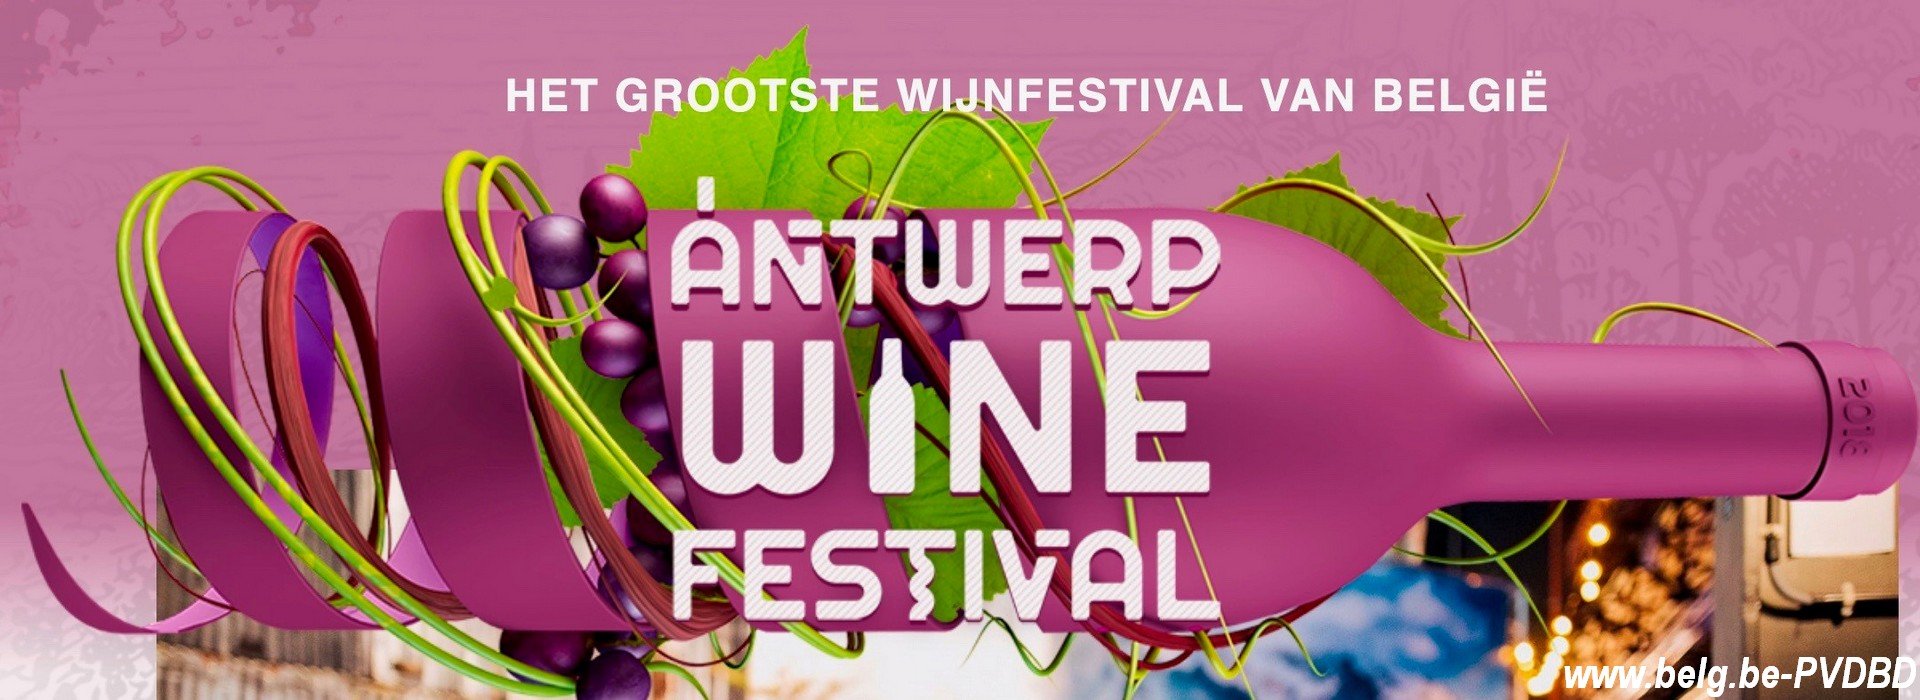 Rollende tonnen, wijnstampers en de beste wijnen vanaf vandaag het gratis 3-daags Antwerp Wine Festival! - Affiche Antwerp Fine Festival 1